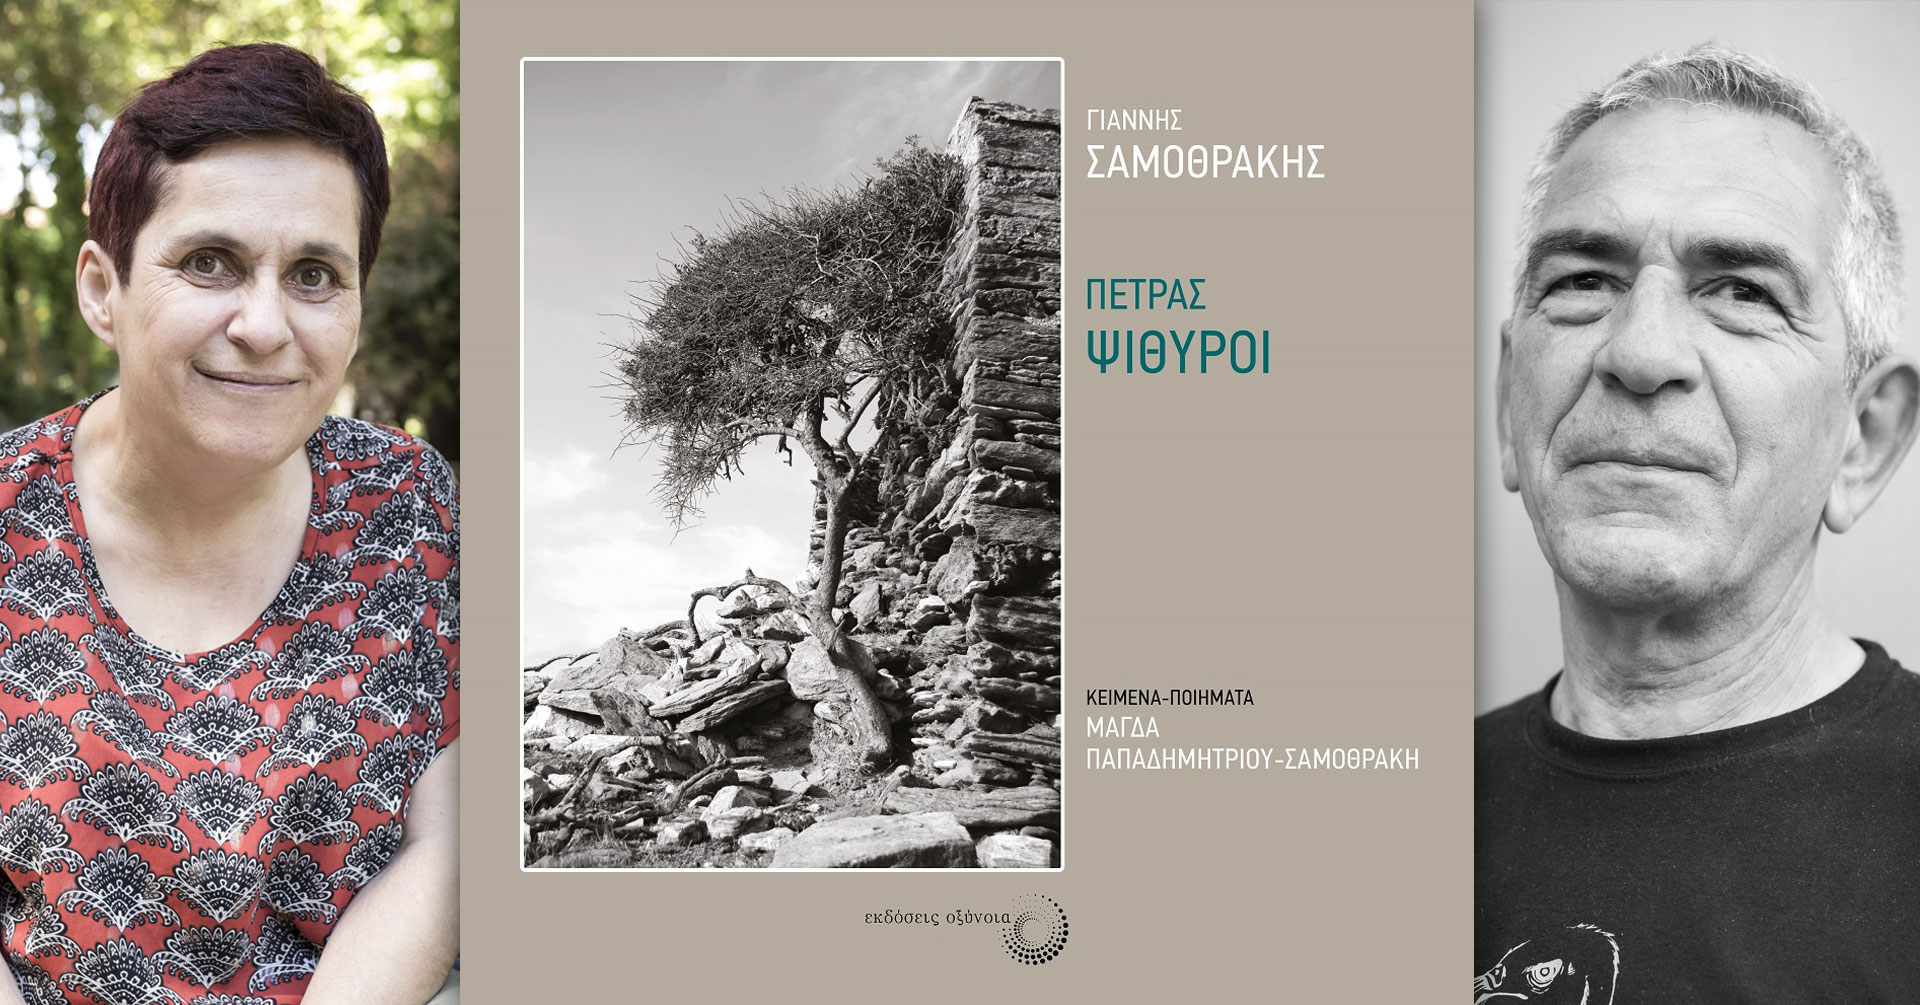 «Πέτρας ψίθυροι», φωτογραφικό λεύκωμα του Γιάννη Σαμοθράκη με κείμενα και ποιήματα της Μάγδας Παπαδημητρίου-Σαμοθράκη